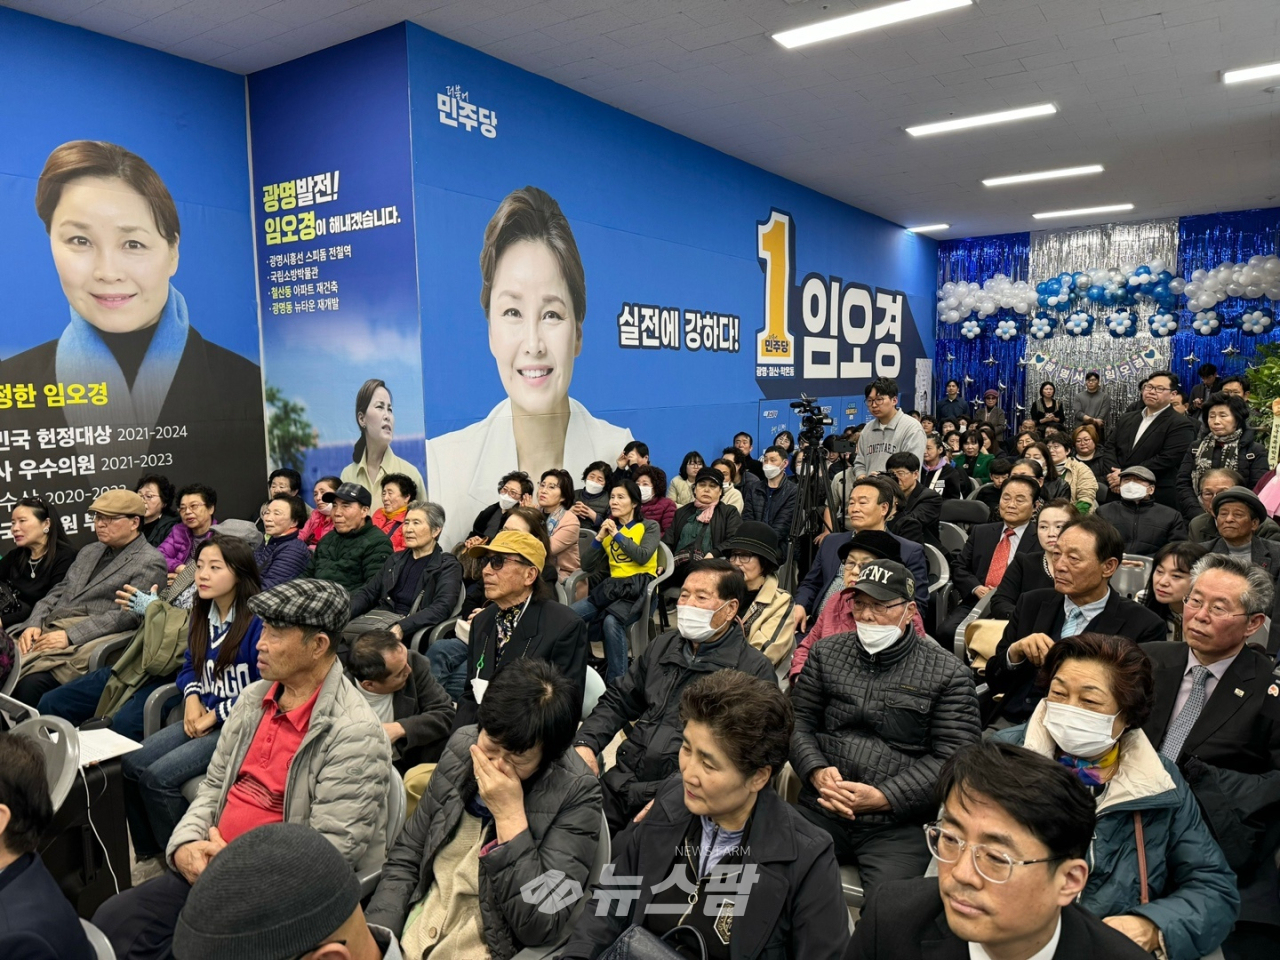 @ 임오경 민주당 광명갑 국회의원 후보(현 국회의원)가 16일 철산동 OK 민생 캠프 선거사무소 개소식을 열었다.